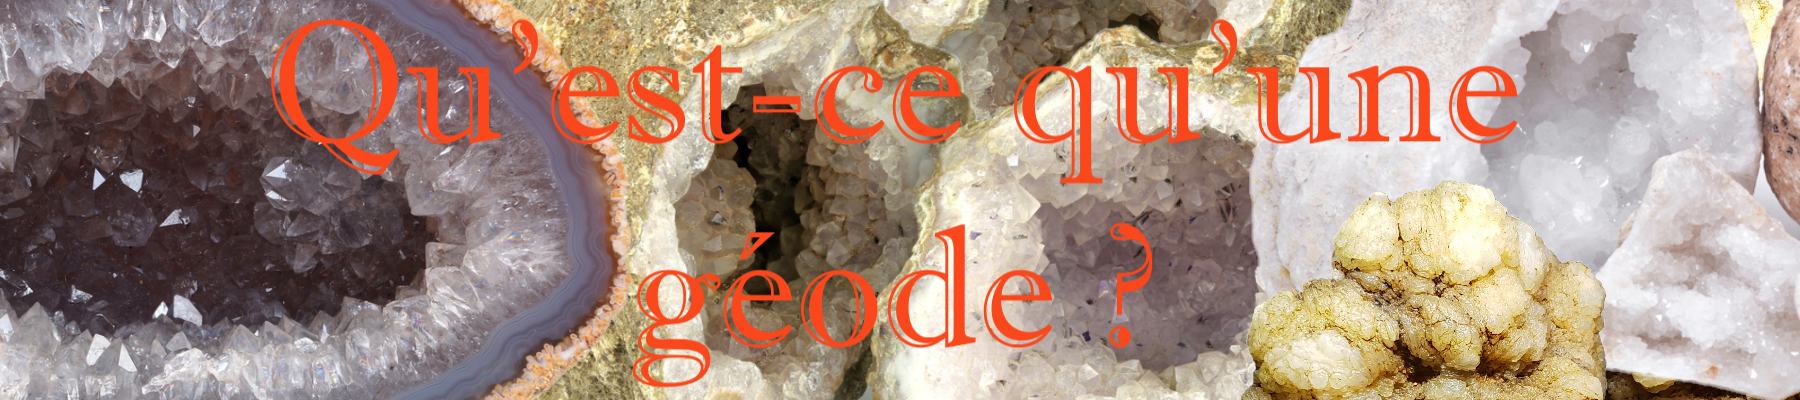 geode-mineraux-cristaux-quartz-explication-definition-achat-vente